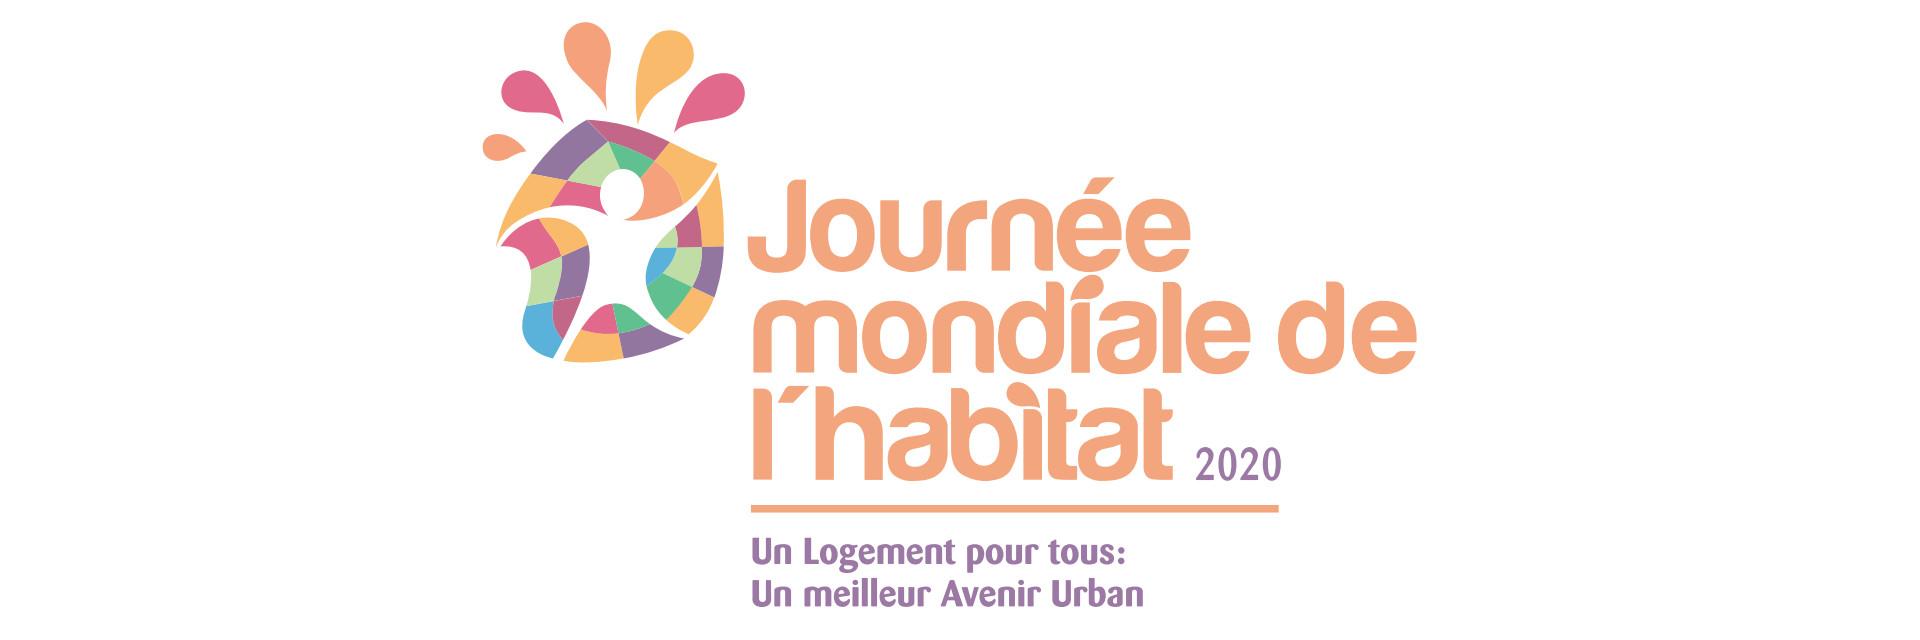 Journée mondiale de l'habitat 2020 - Le logement pour tous : un meilleur avenir urbain